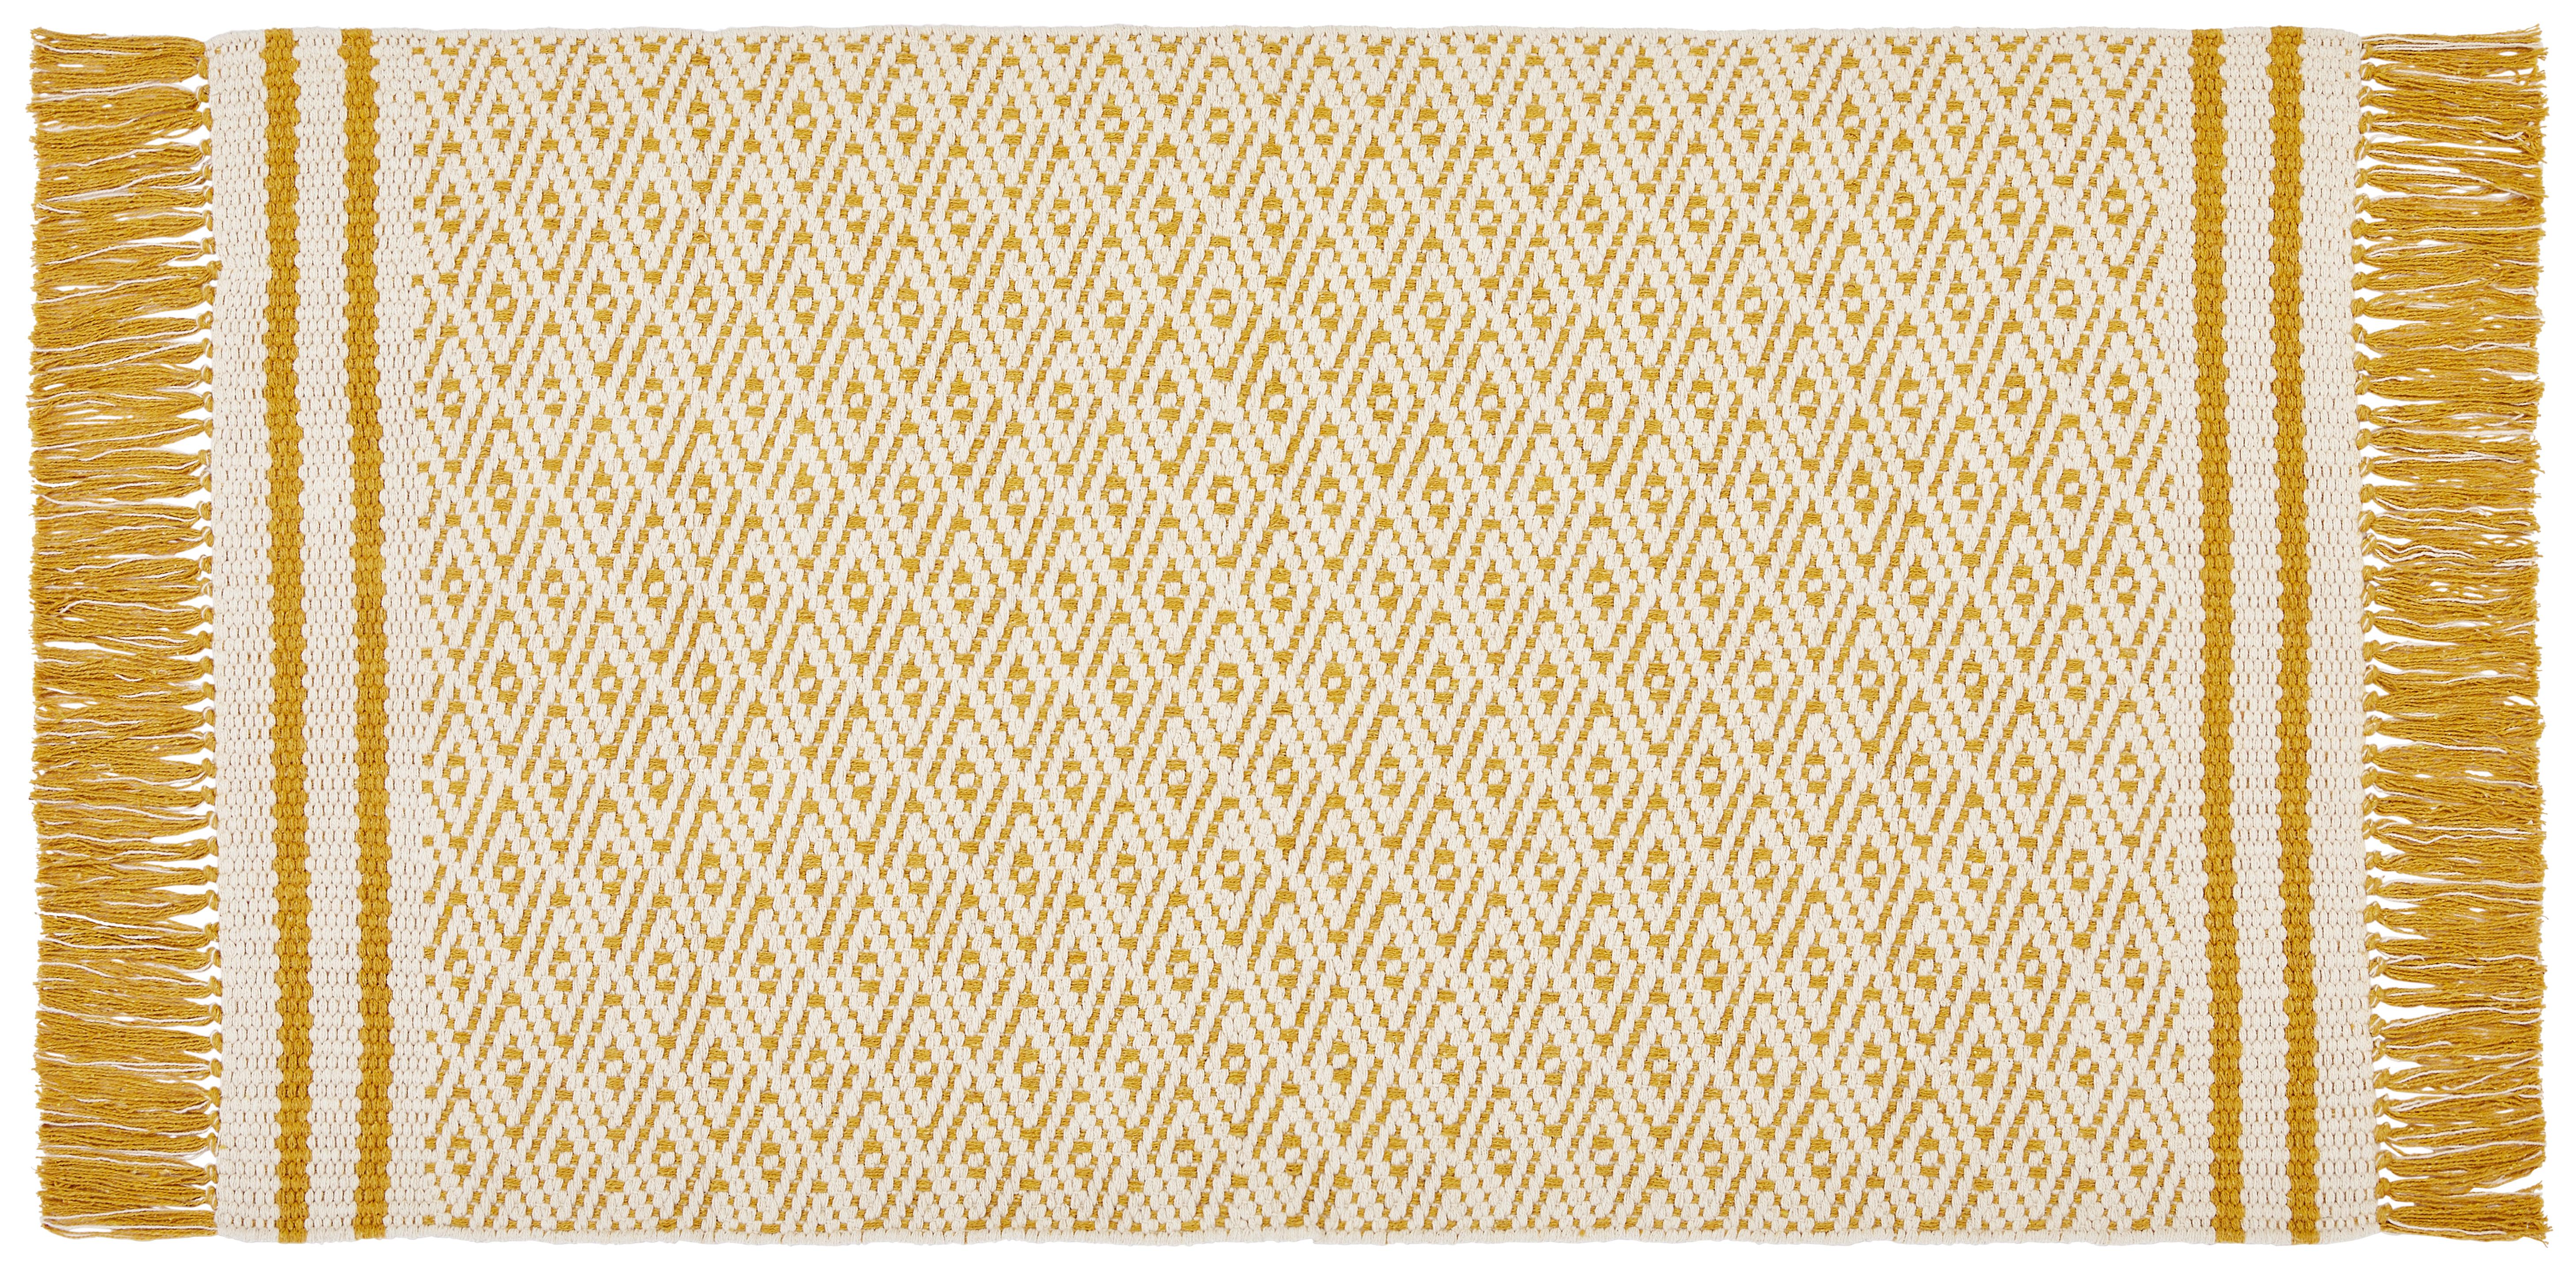 Teppich Vorleger Gelb Mit Fransen Iman 70x120 cm - Gelb, MODERN, Textil (70/120cm) - Ondega